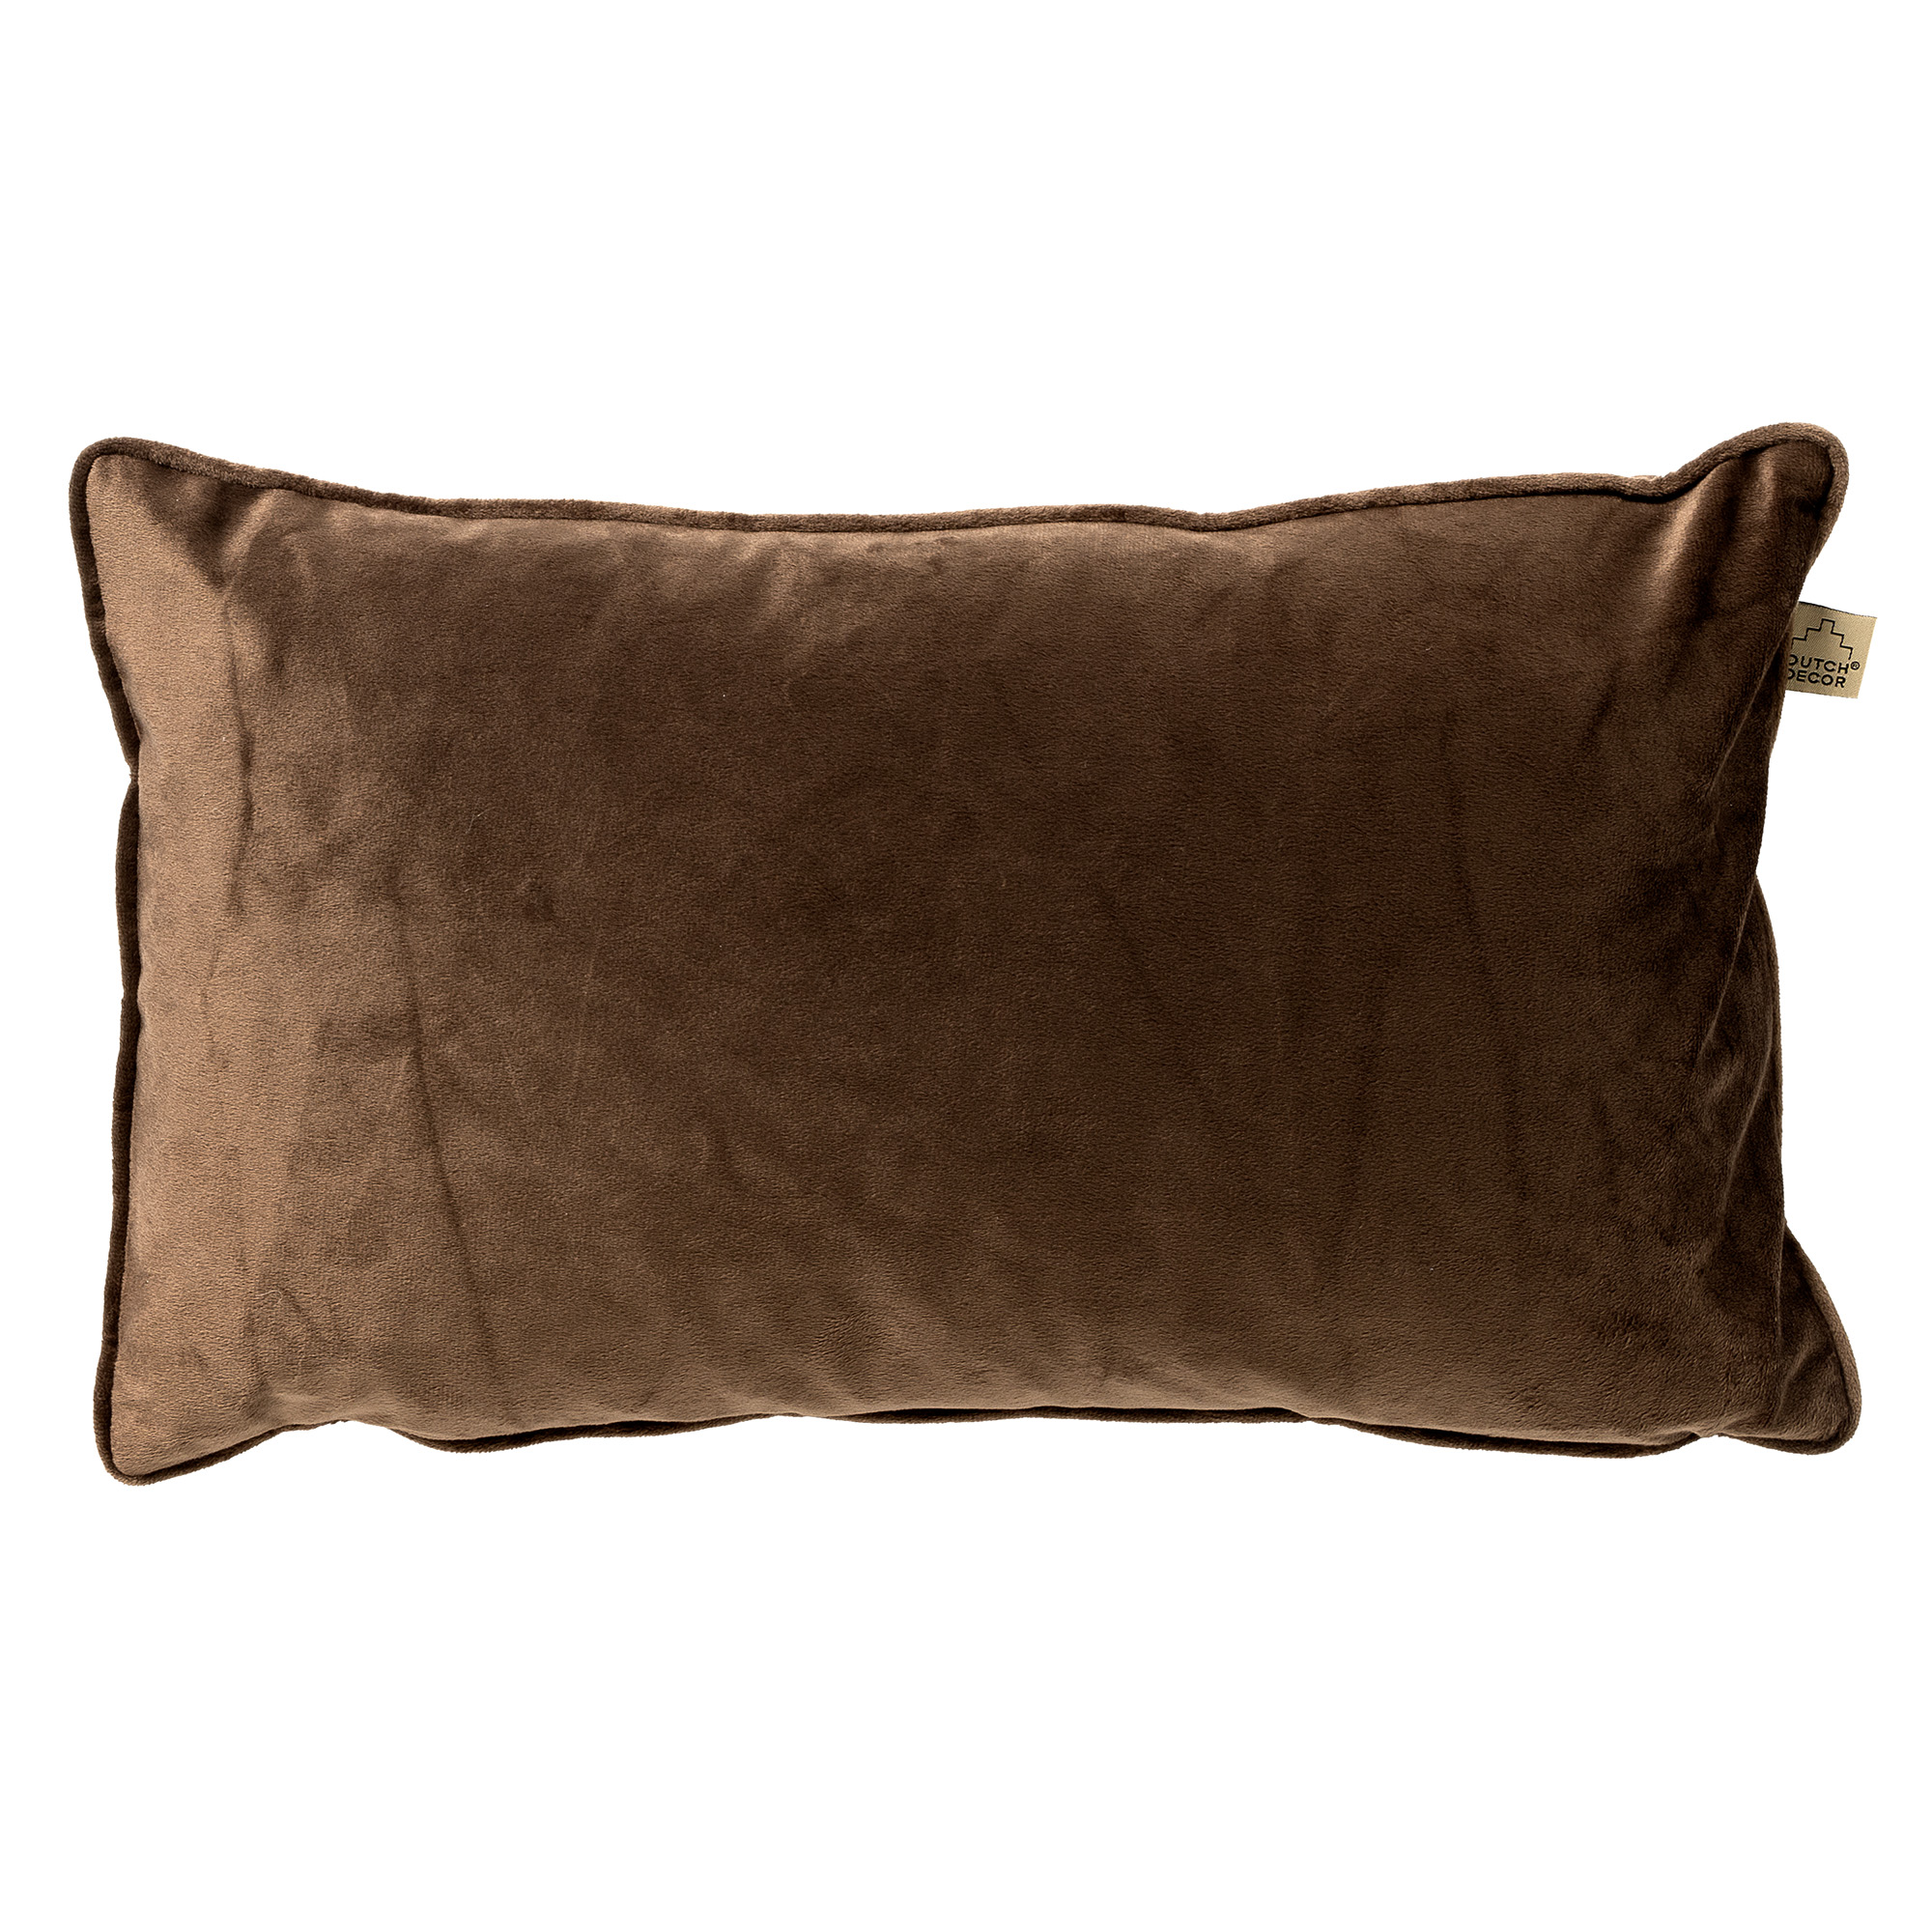 FINN - Cushion 40x60 cm - Chocolate Martini - brown